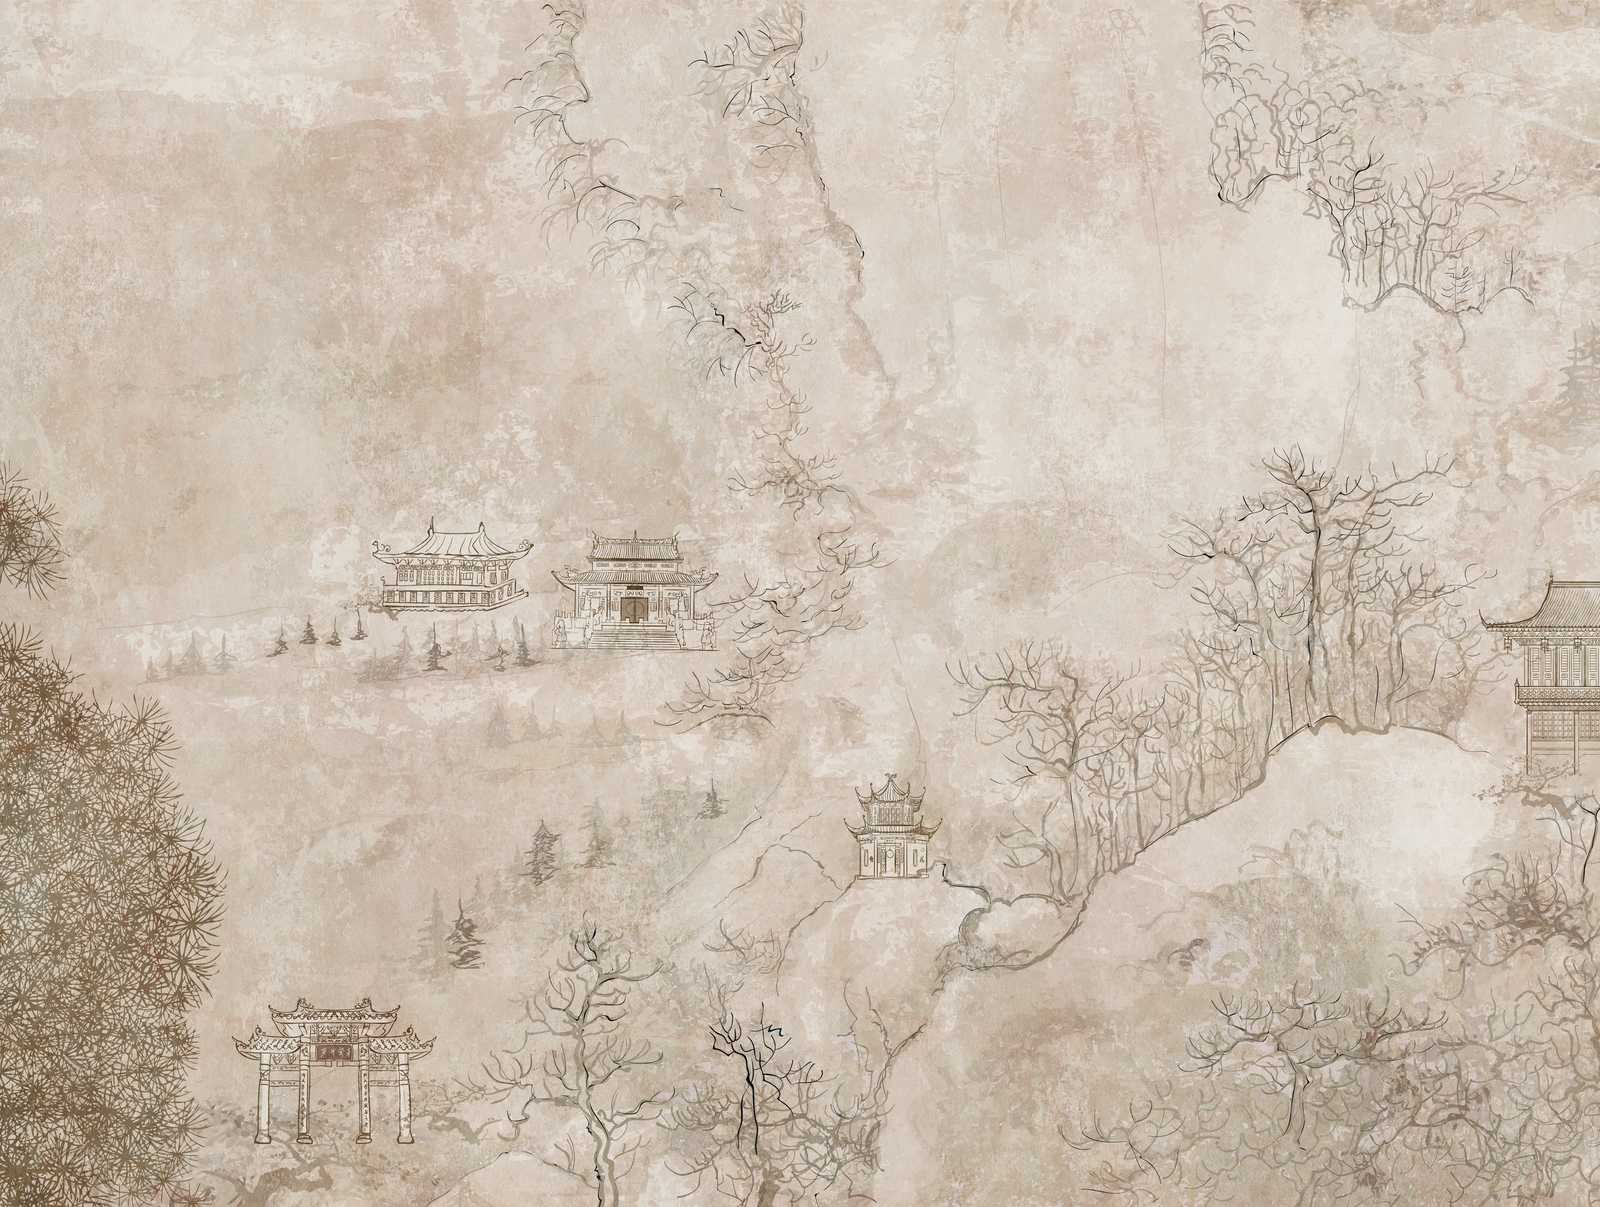             Nouveauté papier peint - papier peint à motifs Asie Rétro Design avec paysage et pagodes
        